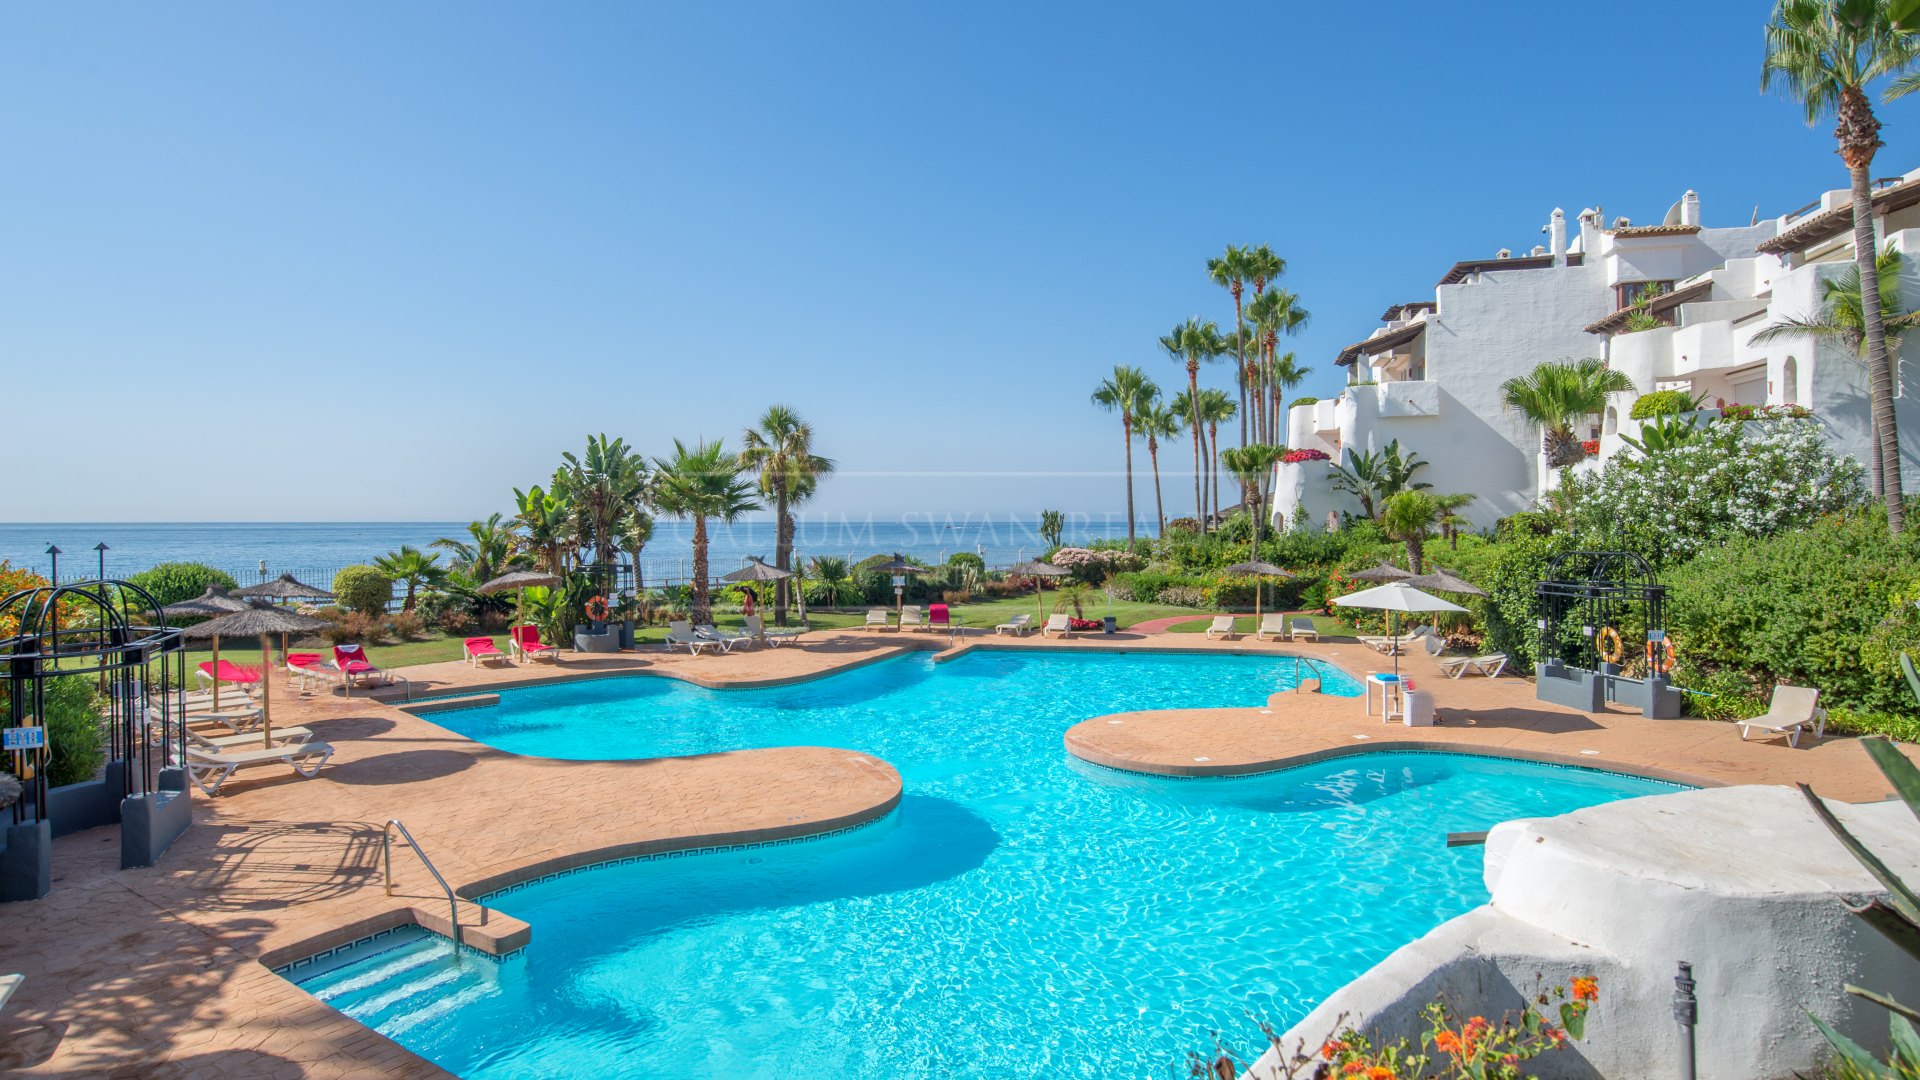 Apartment in the beachfront complex of Ventura del Mar